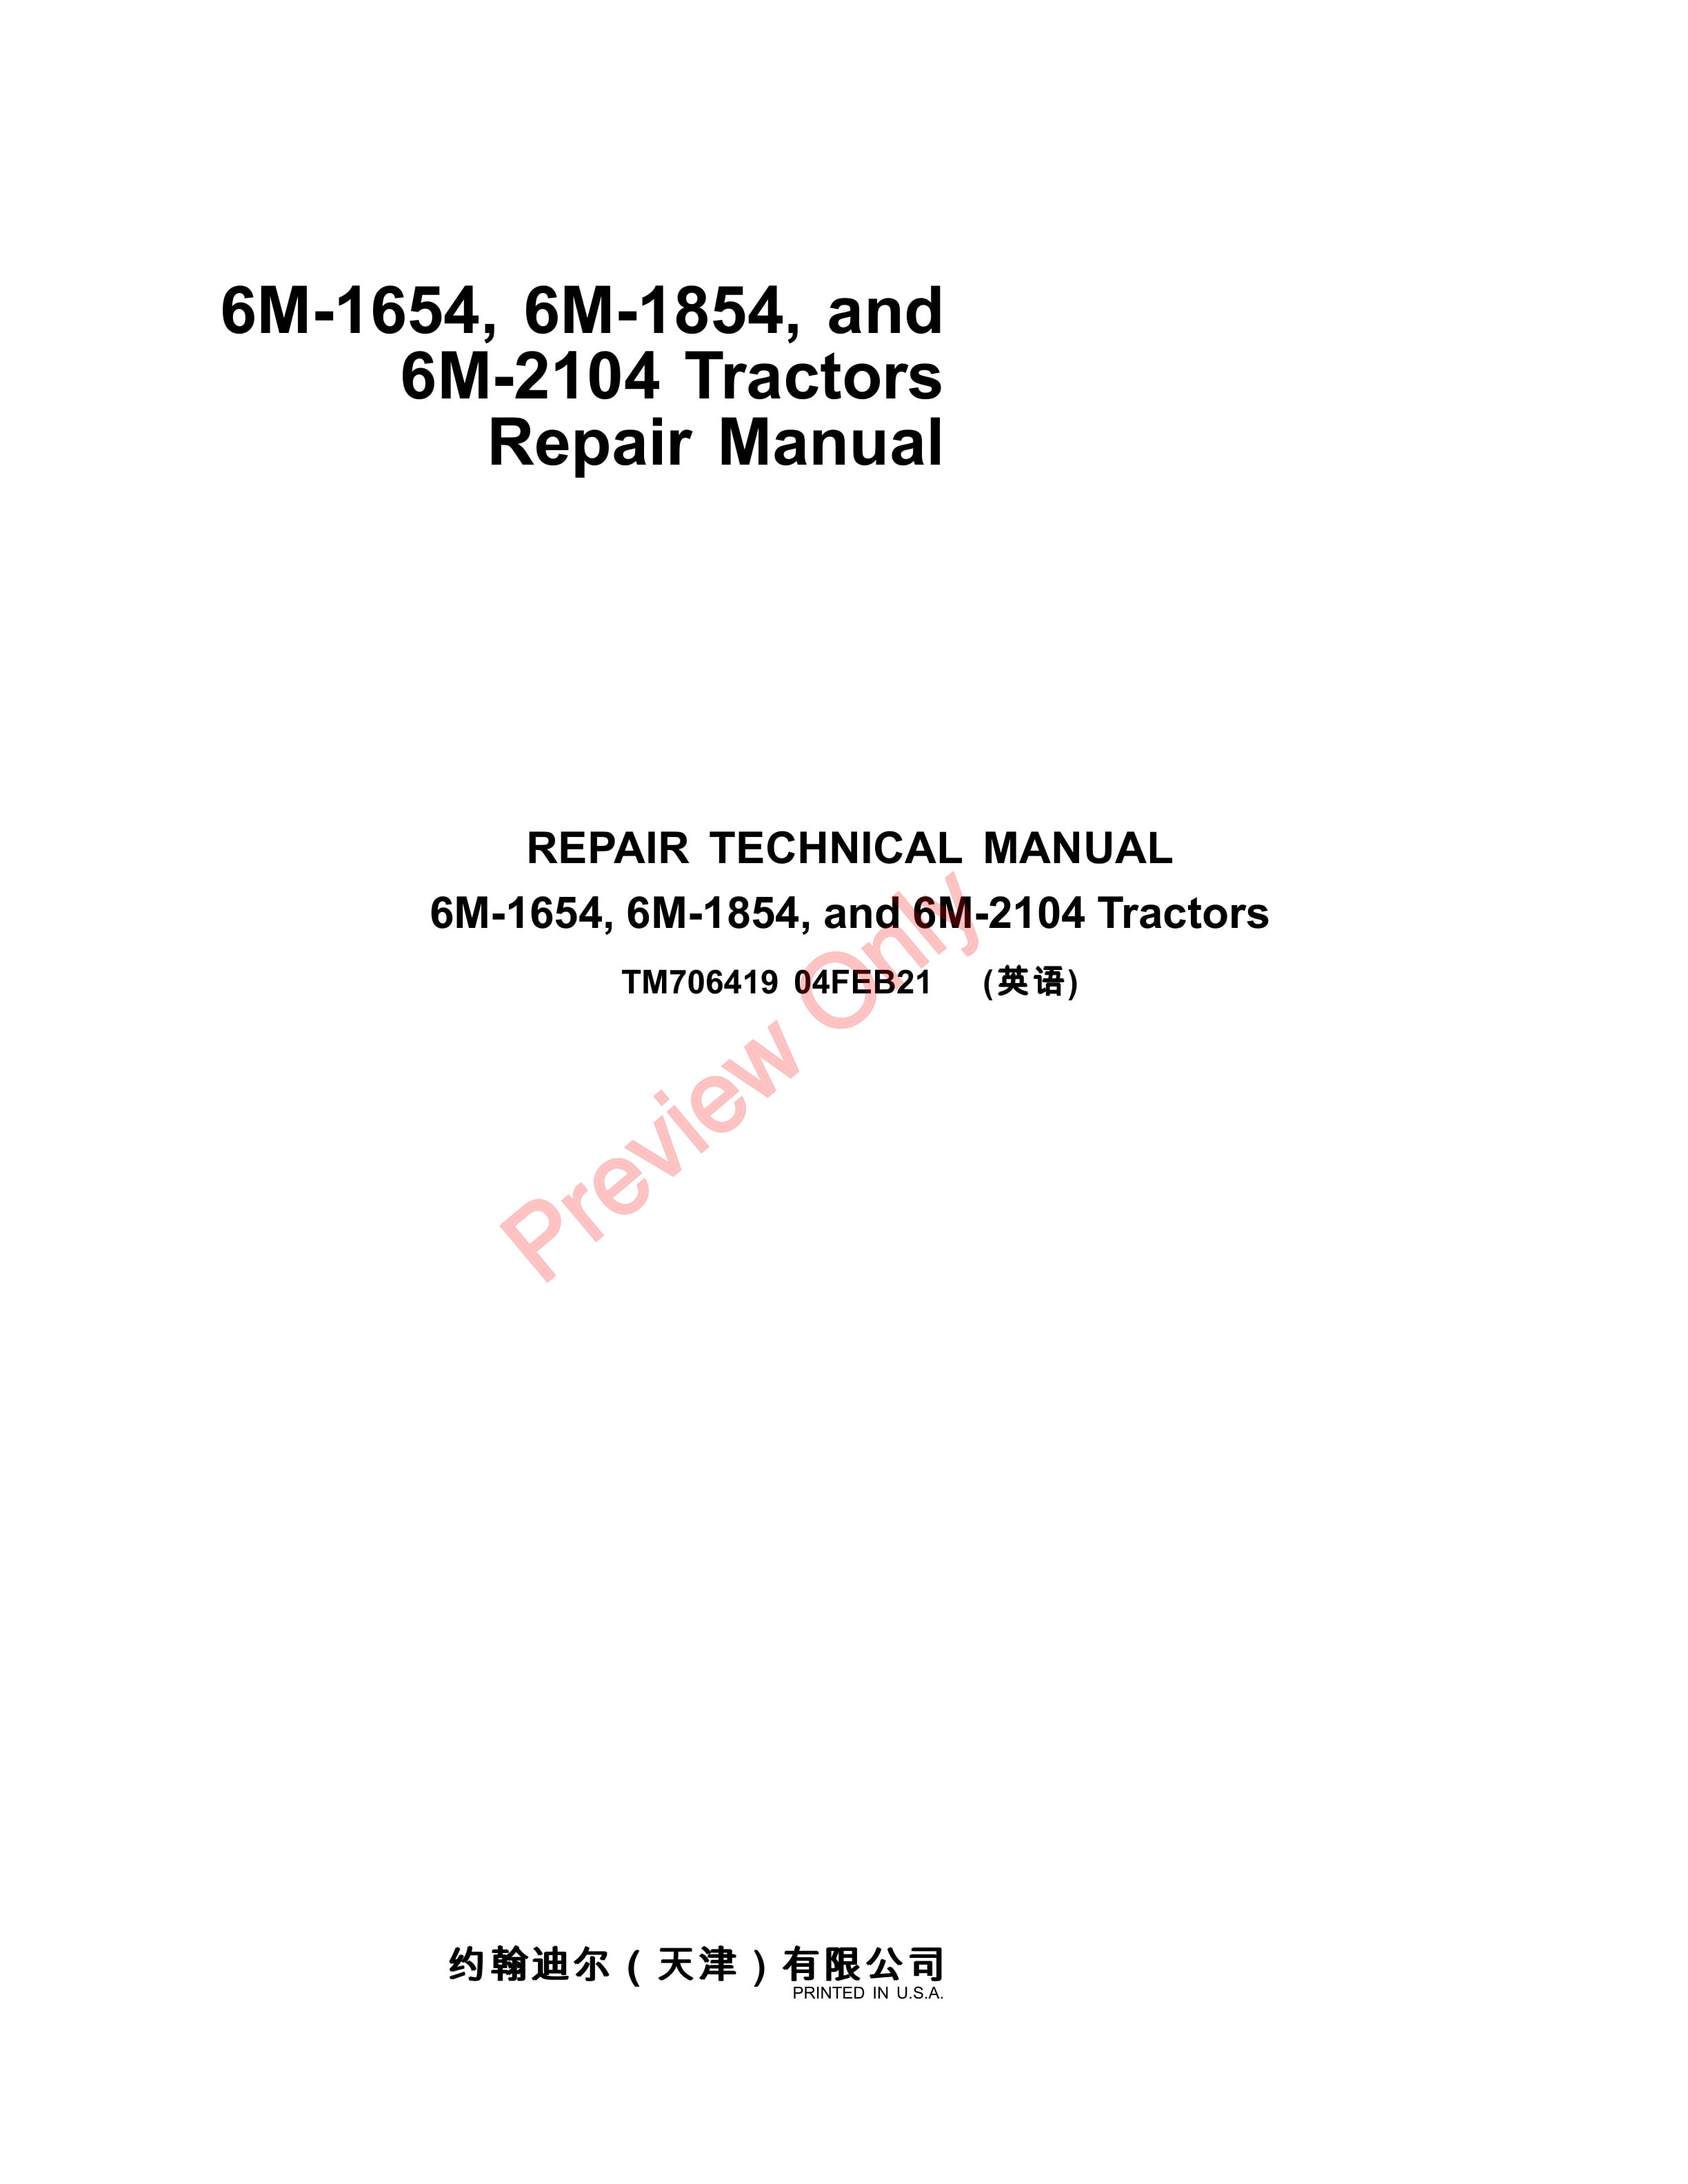 John Deere 6M 1654 6M 1854 and 6M 2104 Tractors Repair Technical Manual TM706419 04FEB21 1